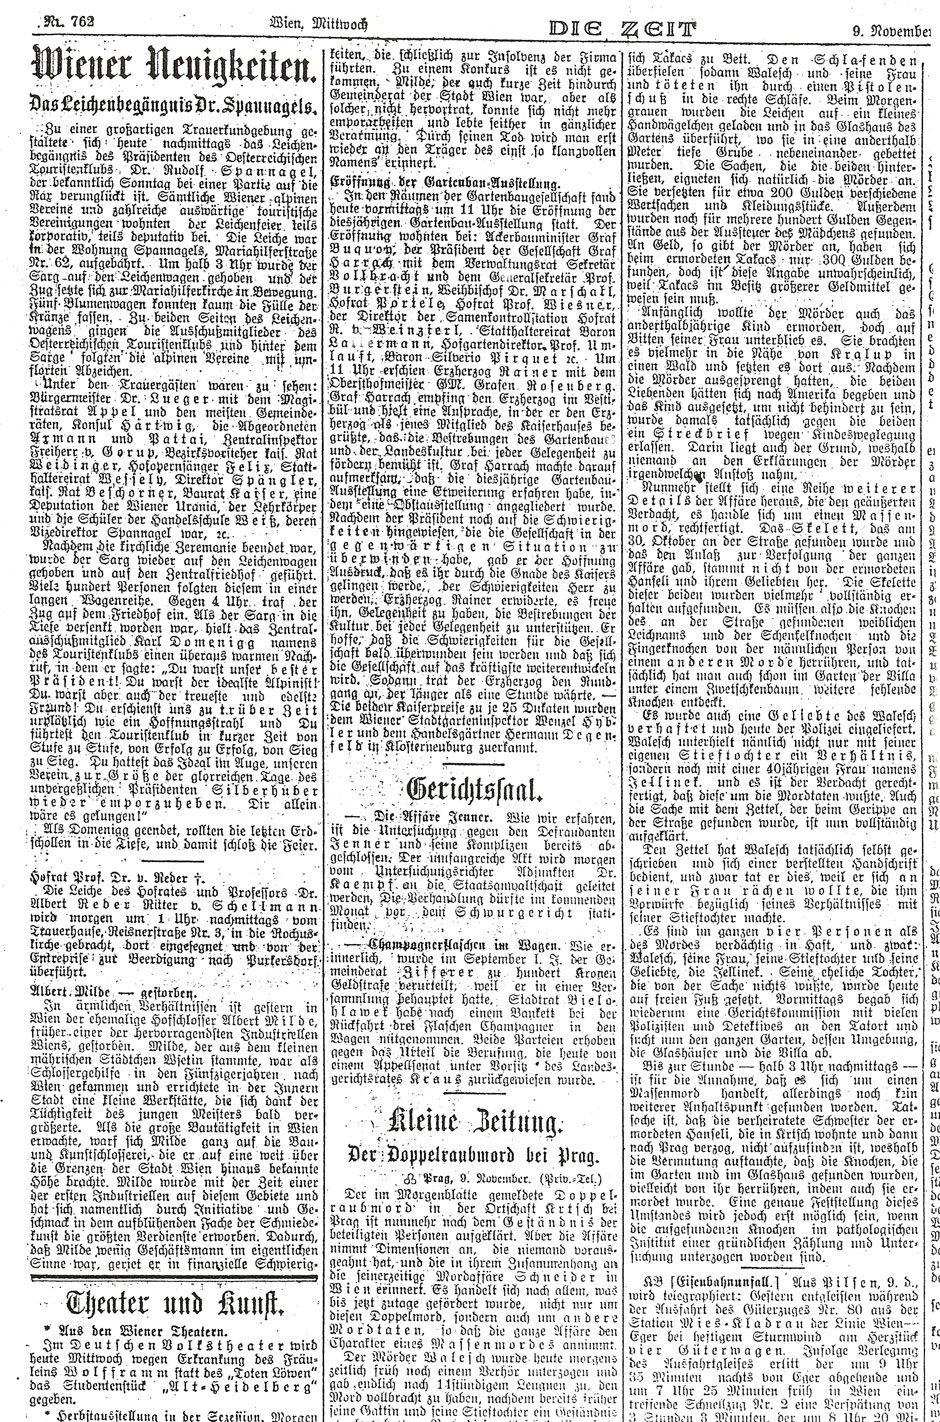 Die Zeit, 9.11.1904; Folgeblatt